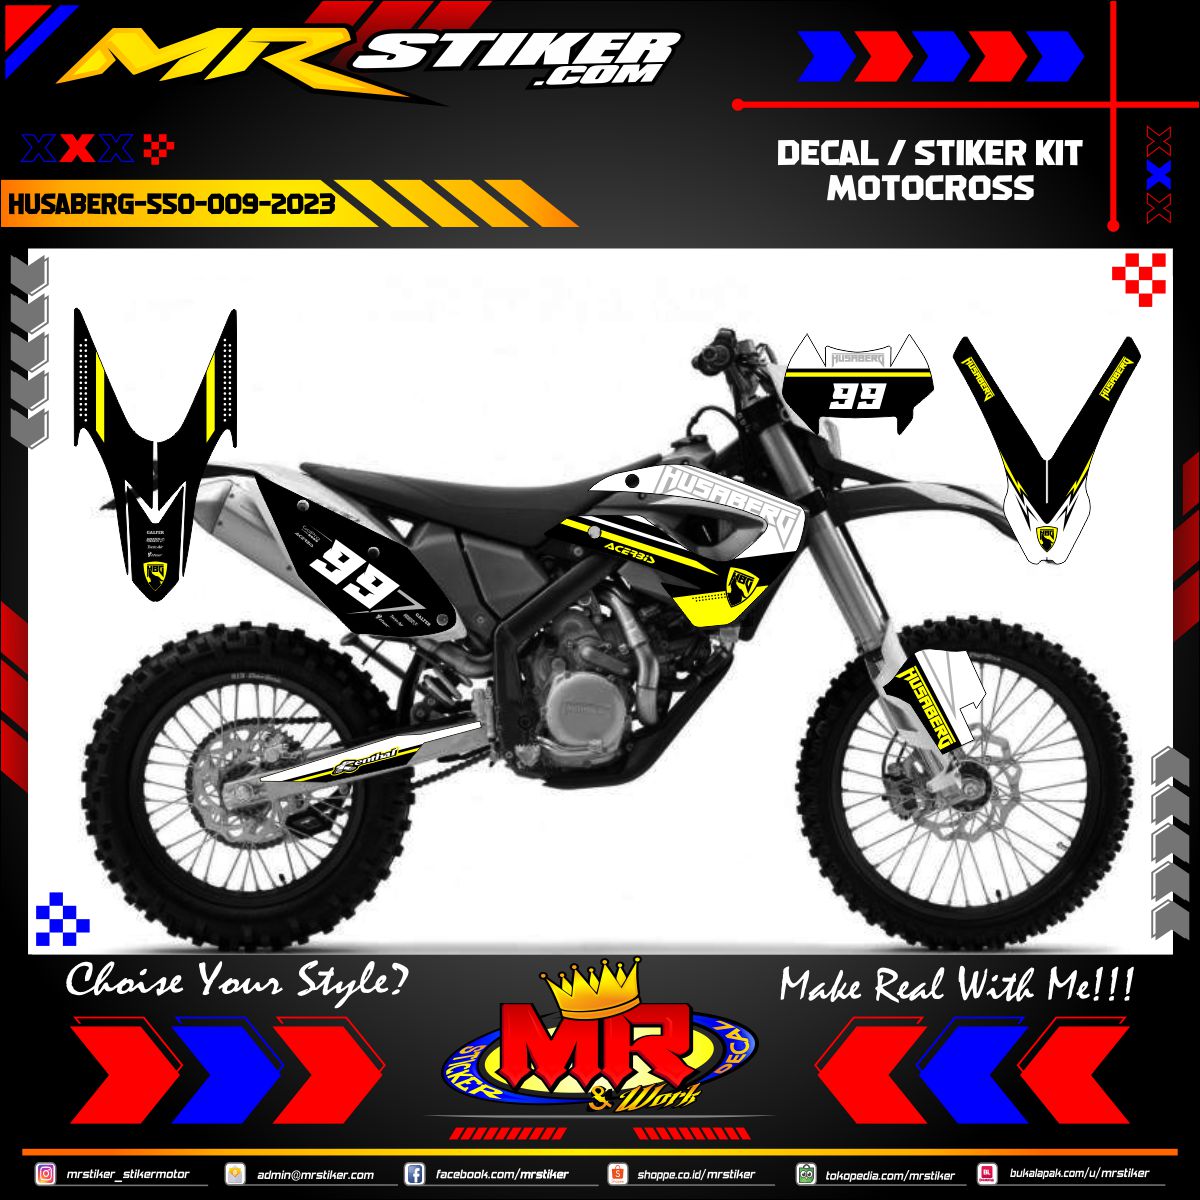 Stiker motor decal Motocross Husaberg 550 Yellow White Grafis Decal Kit